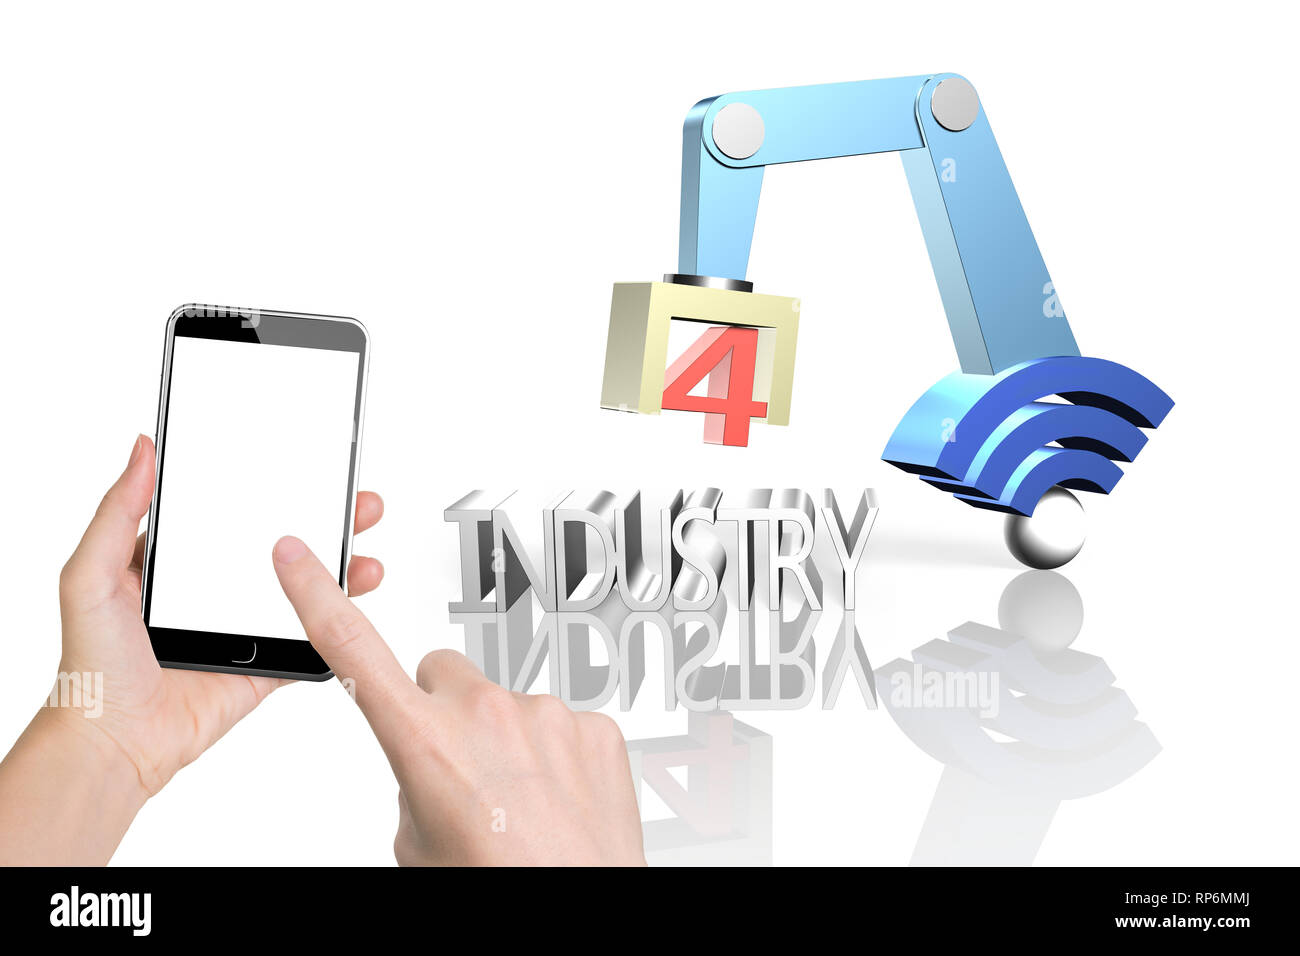 Concept de l'industrie 4.0. Woman hand holding smart phone pour contrôler le bras robot 3D avec connexion Wi-Fi gratuite et de l'industrie signe texte 4.0, isolé sur fond blanc. Banque D'Images